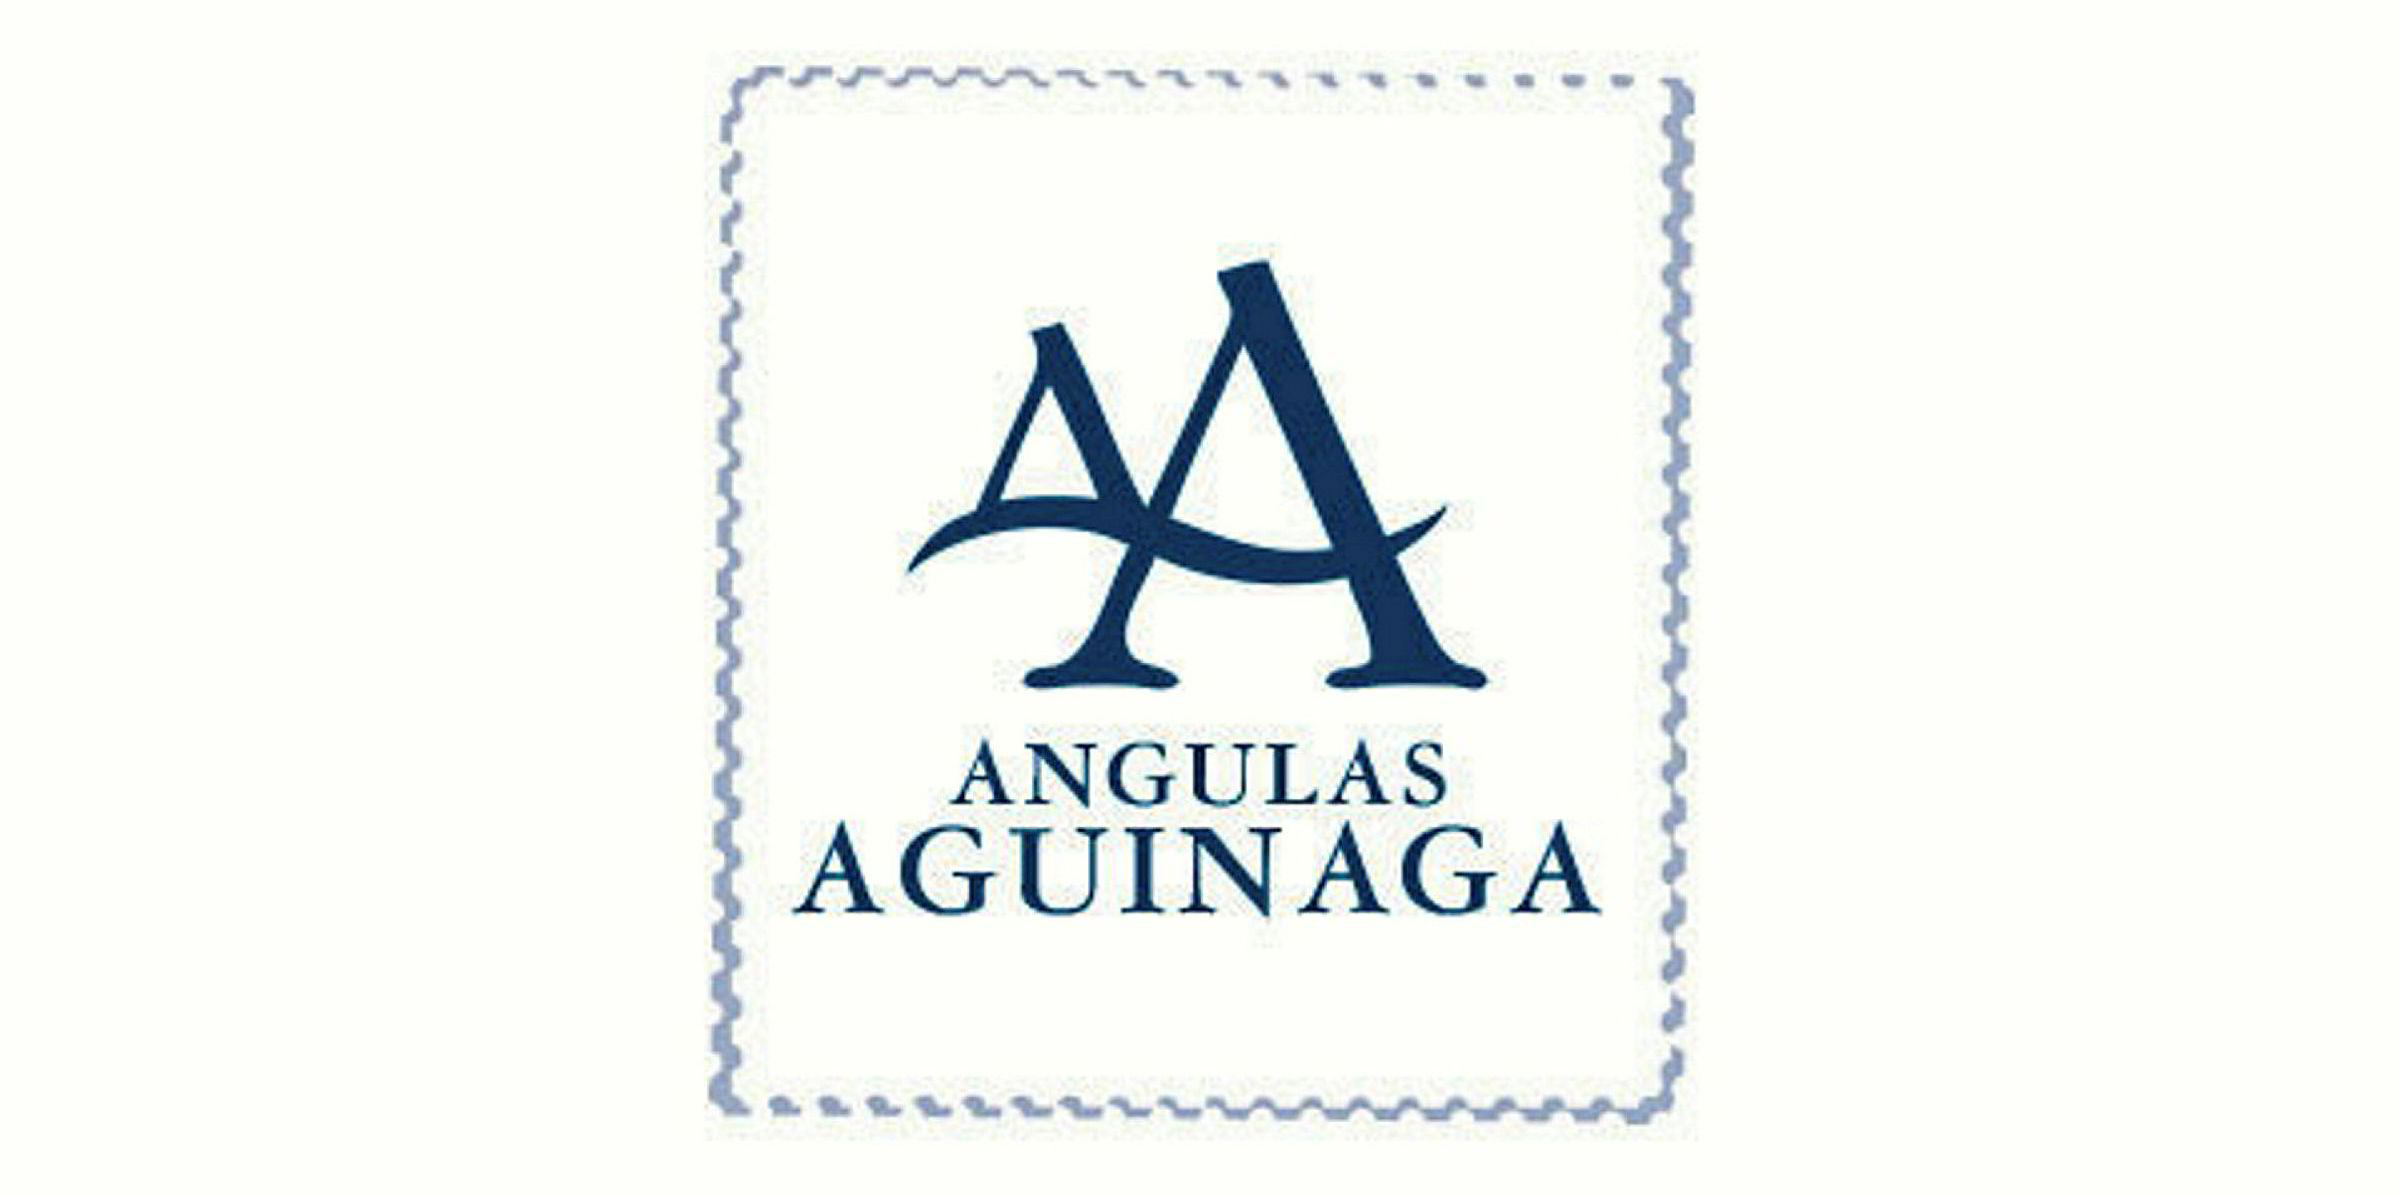 PRODUCTOS DEL MAR ANGULAS AGUINAGA Distribución de alimentación industrias rebollo productos de alimentación Ourense Galicia empresa de alimentación Ourense